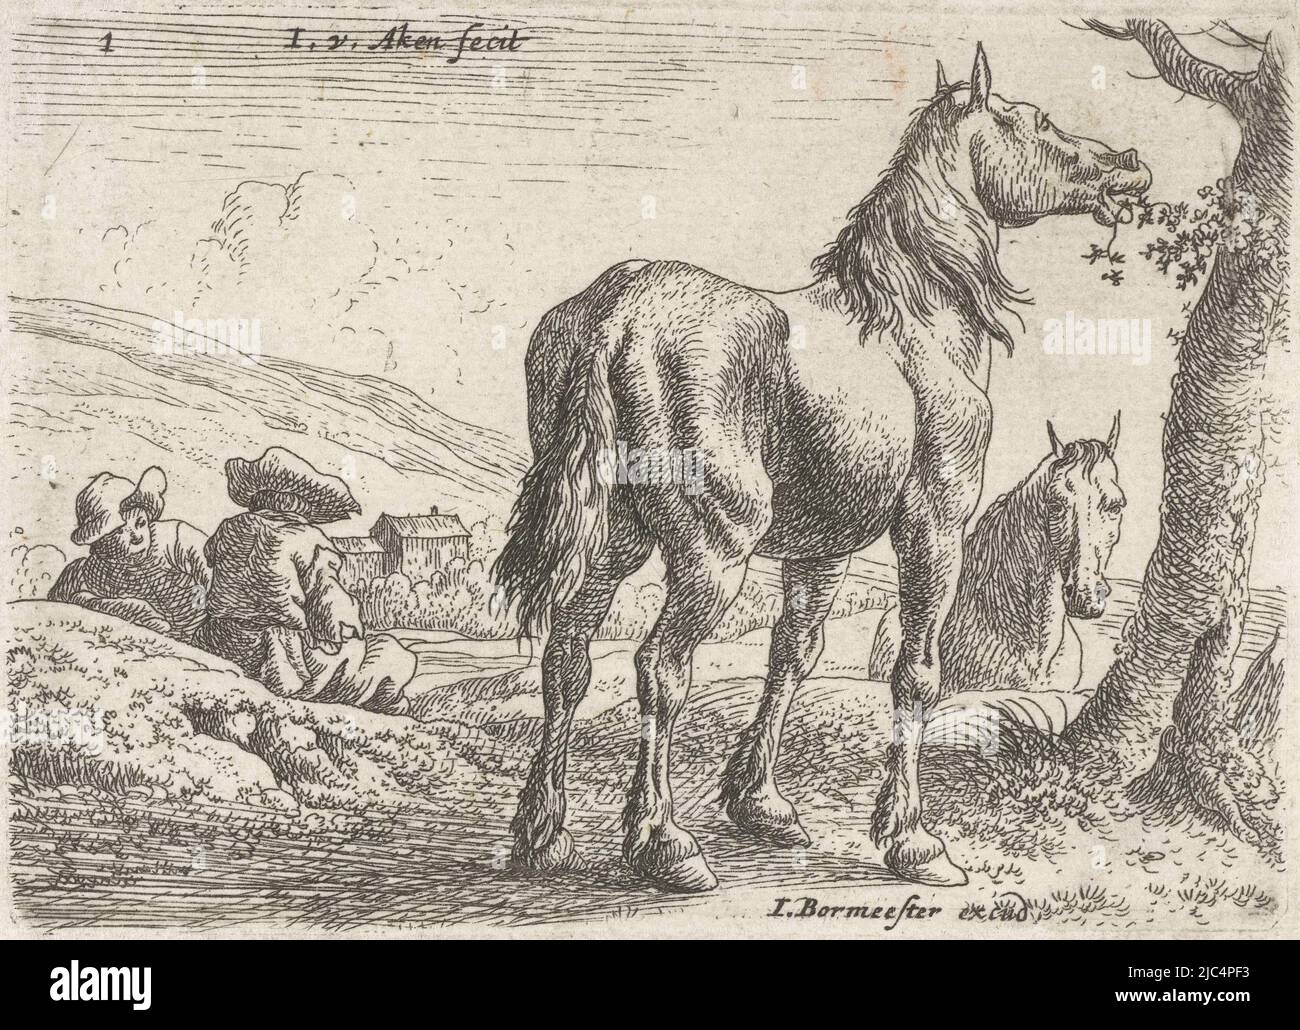 Paysage avec des chevaux mangeant des feuilles d'un arbre. Sur la gauche, deux hommes sont assis sur le sol, derrière la droite la tête d'un deuxième cheval peut être vu, Eating Horse Landscapes avec des chevaux (titre de la série), imprimeur: Jan van Aken, (mentionné sur l'objet), éditeur: Jochem Bormeester, (mentionné sur l'objet), Amsterdam, 1624 - 1661 et/ou 1677 - 1690, papier, gravure, h 72 mm × h 99 mm Banque D'Images